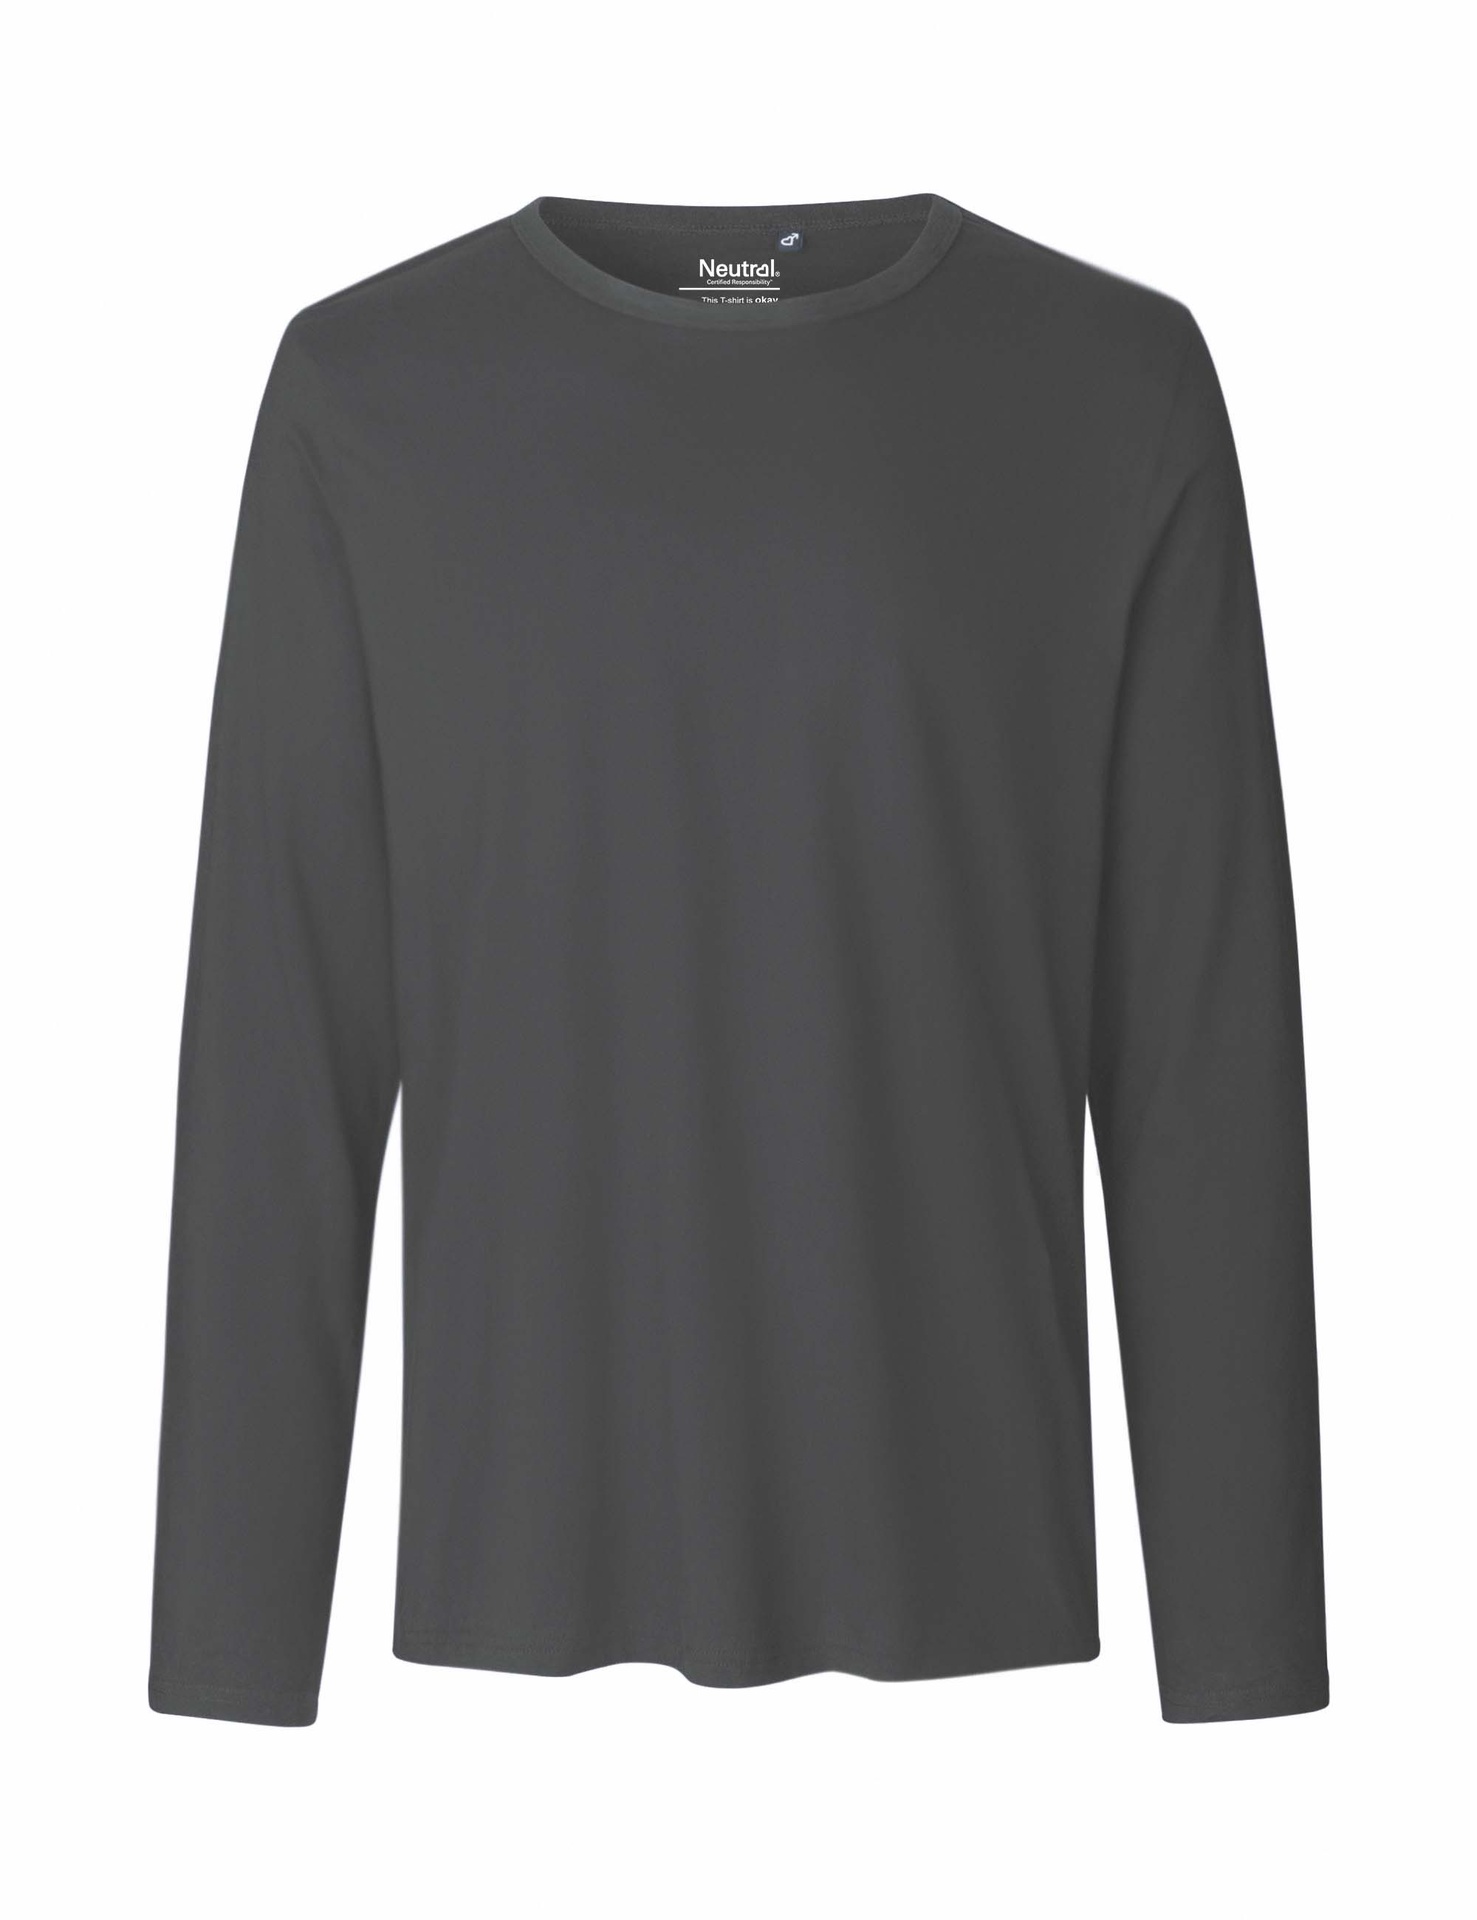 [PR/02367] Mens Long Sleeve T-Shirt (Charcoal 06, 3XL)